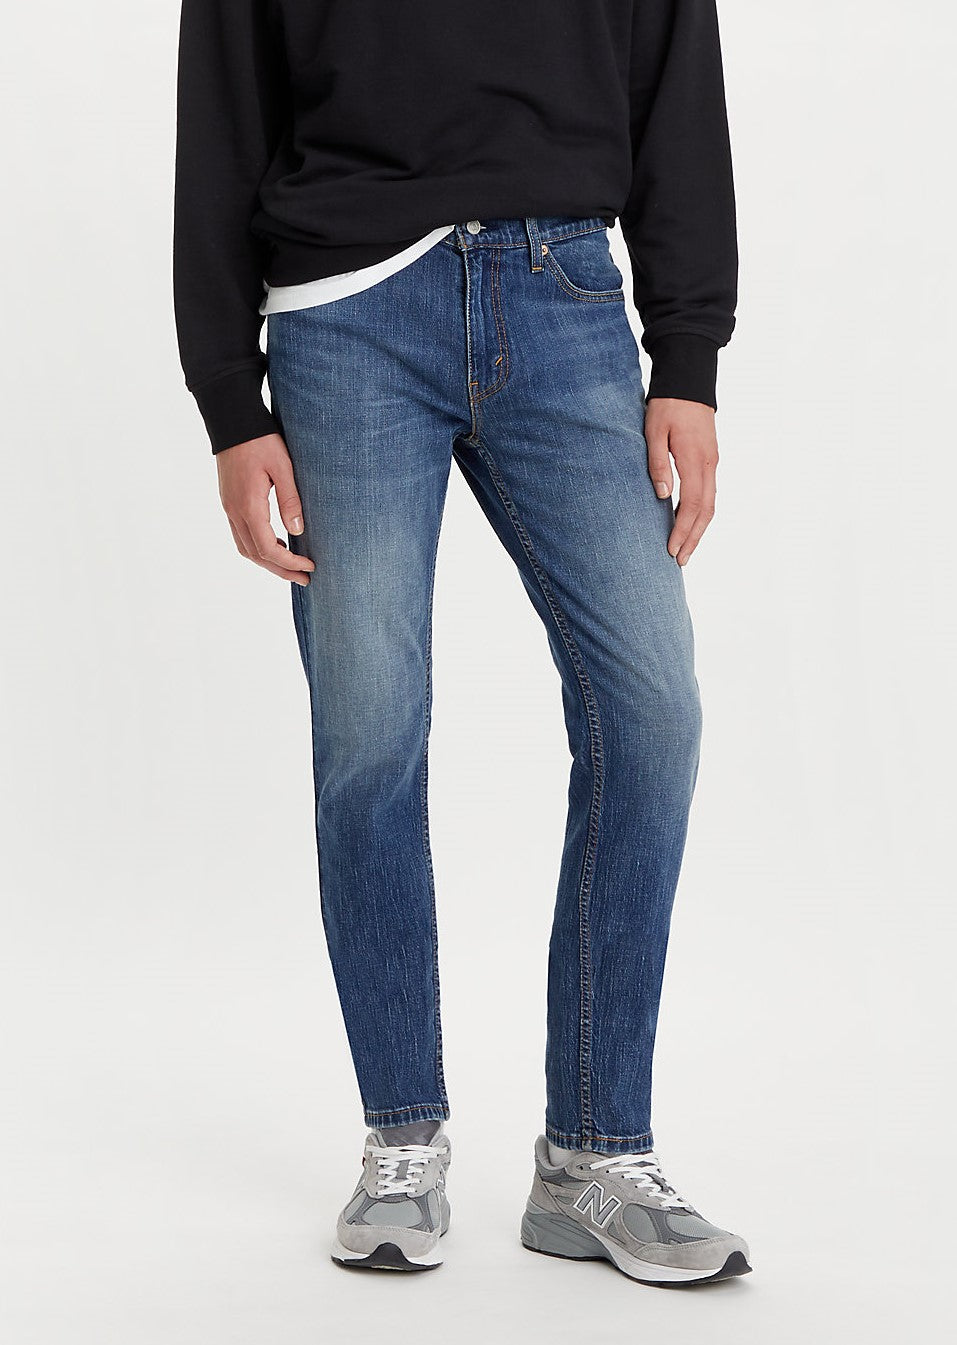 pantalon-jeans-levis-511-slim-p-caballeros